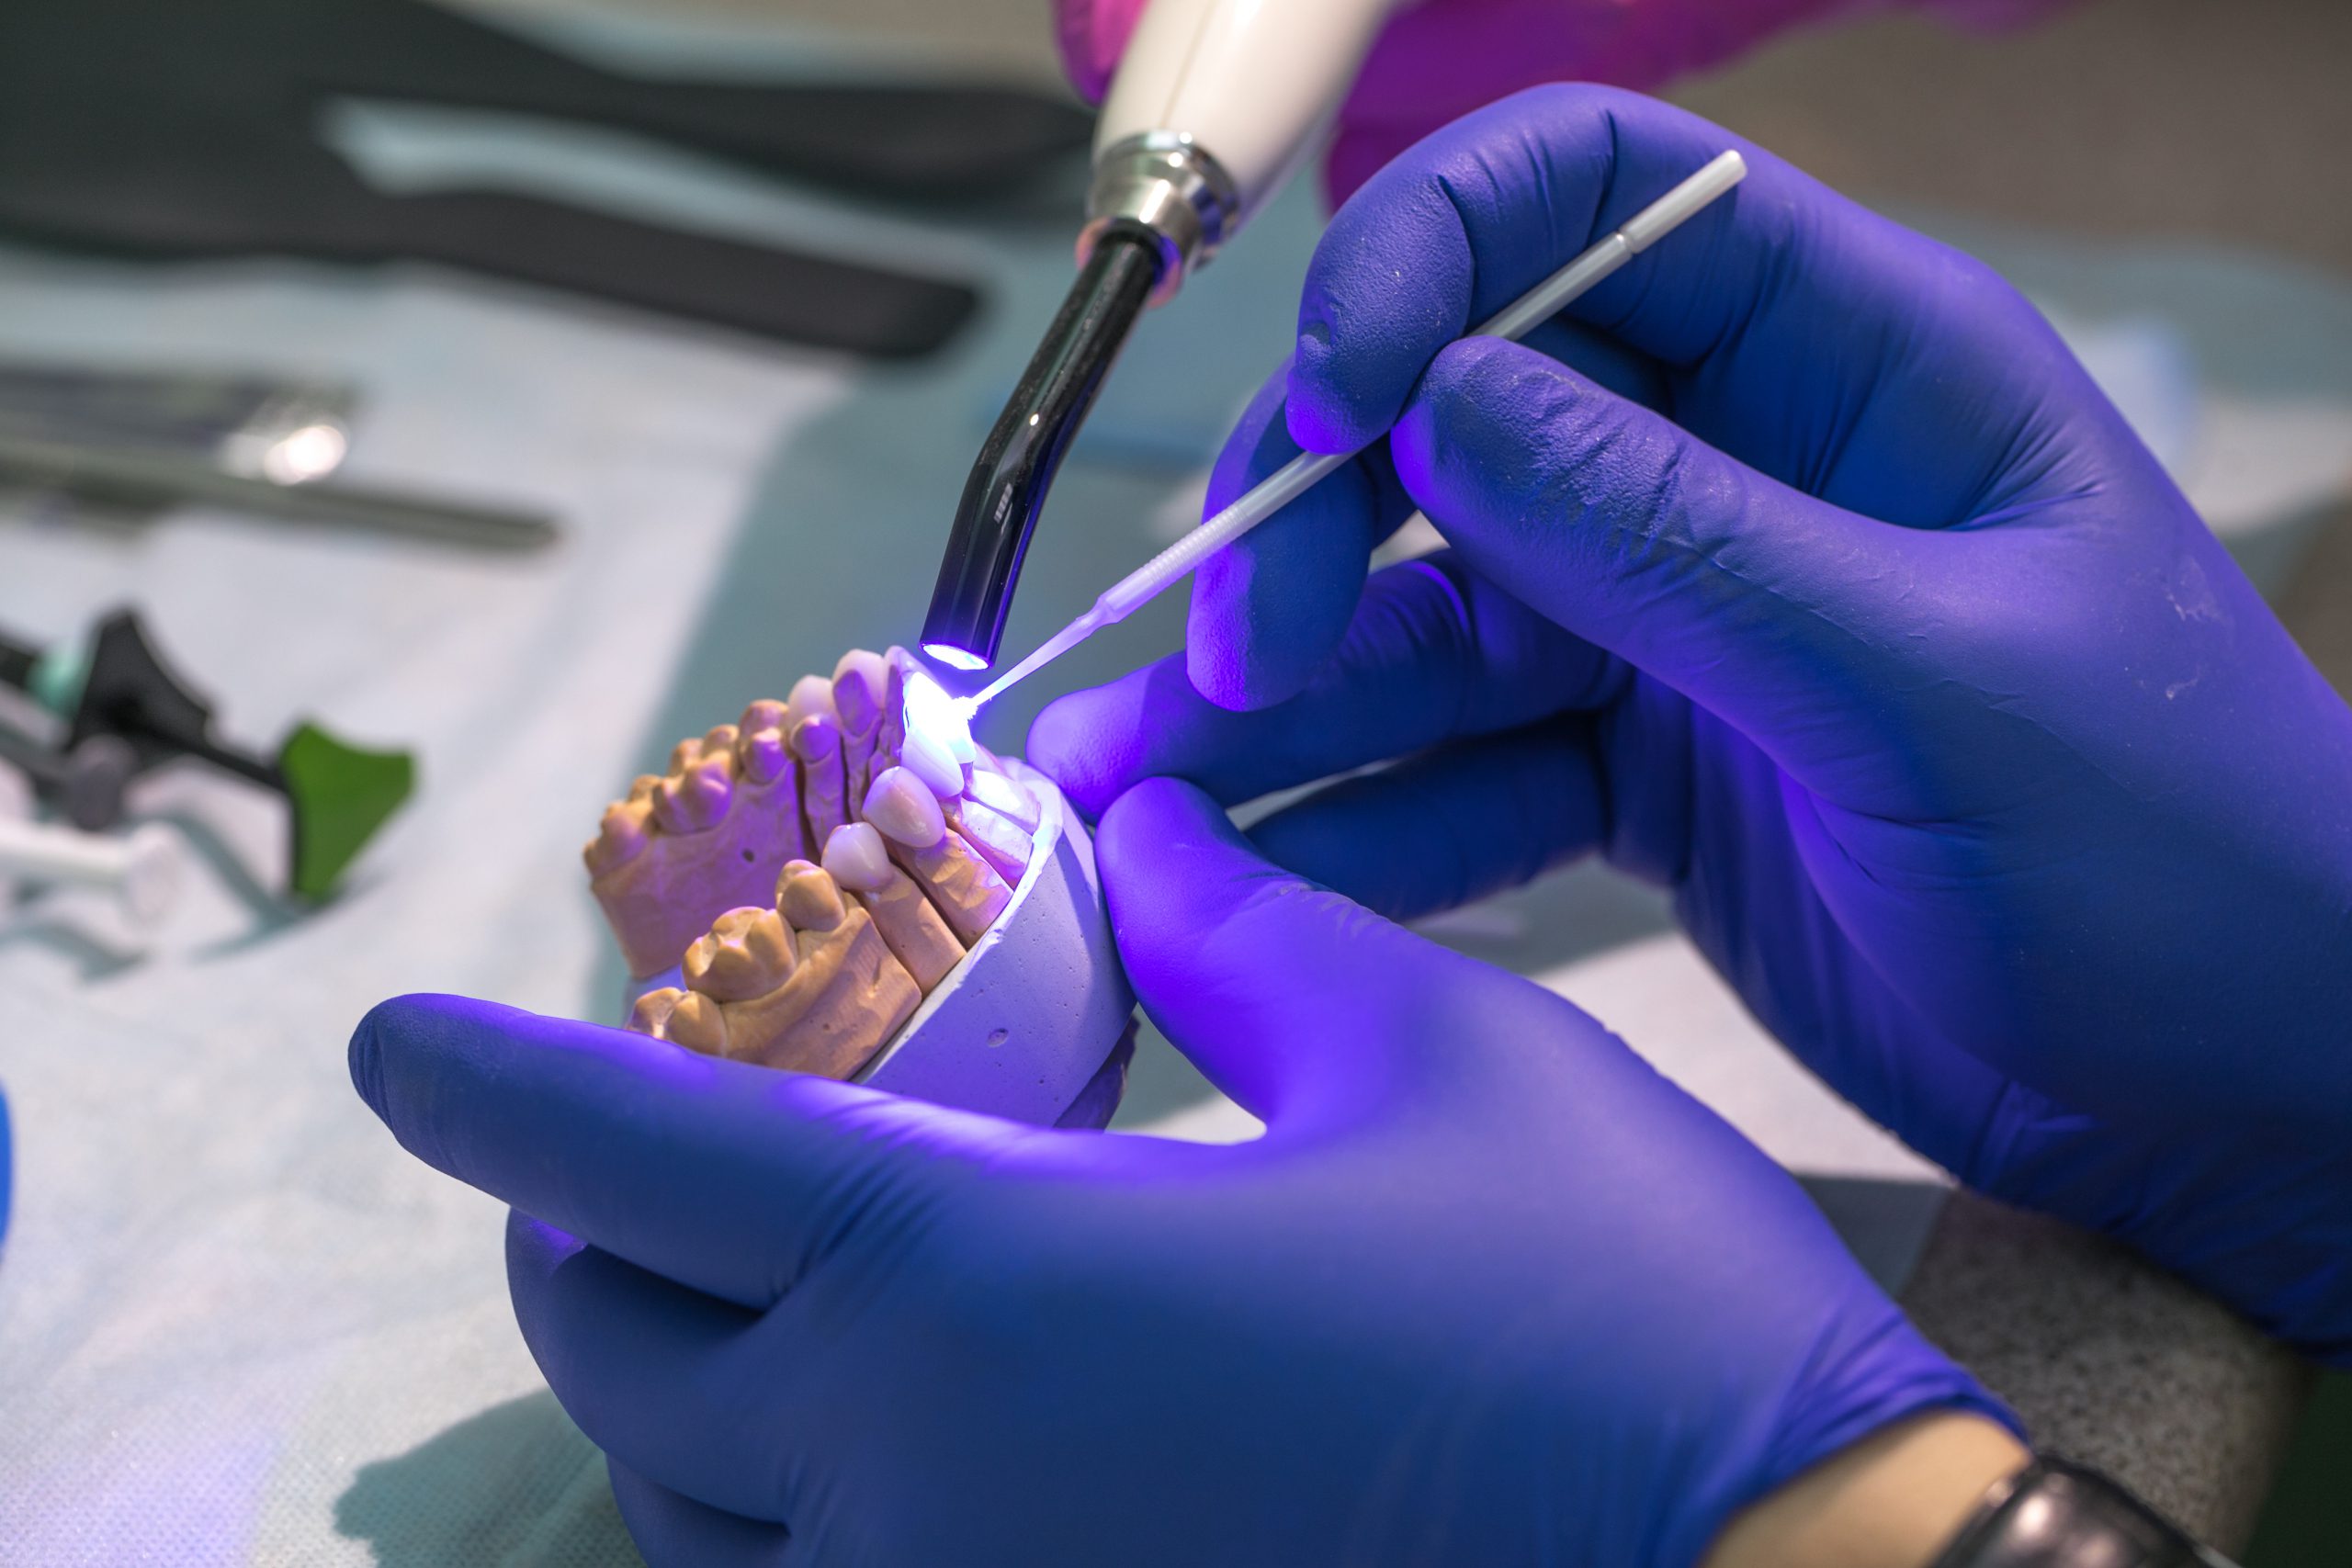 Qué son las carillas dentales y para qué sirven